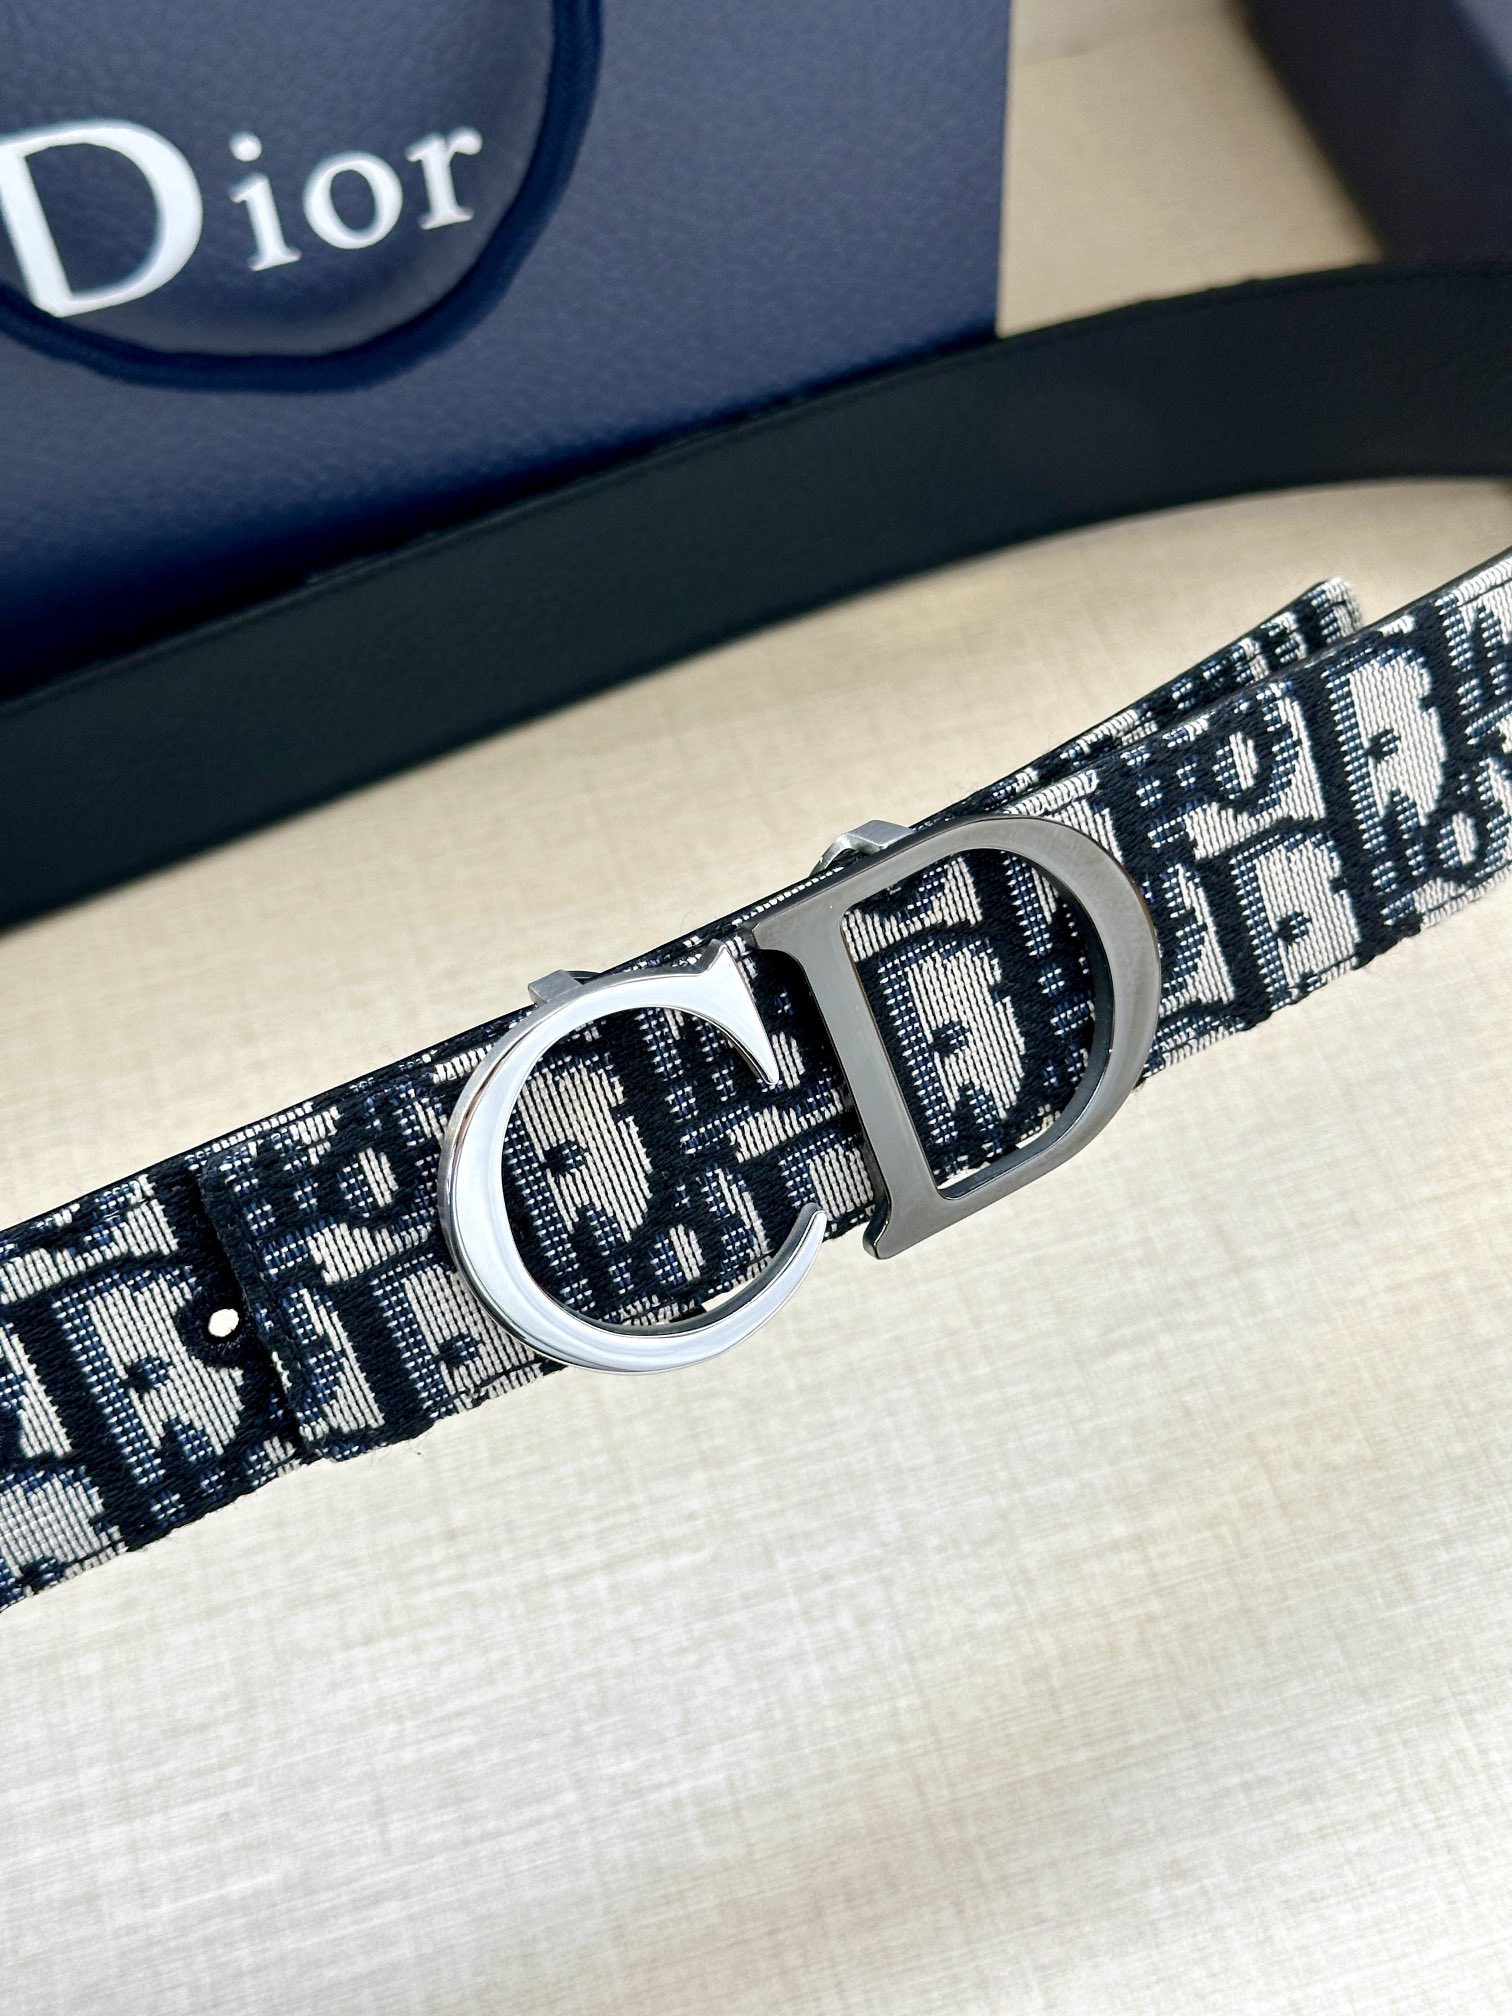 宽度3.5cmDior这款腰带扣采用“CD”标志造型以金属覆层黄铜精心打造可与各式35毫米腰带搭配提升格